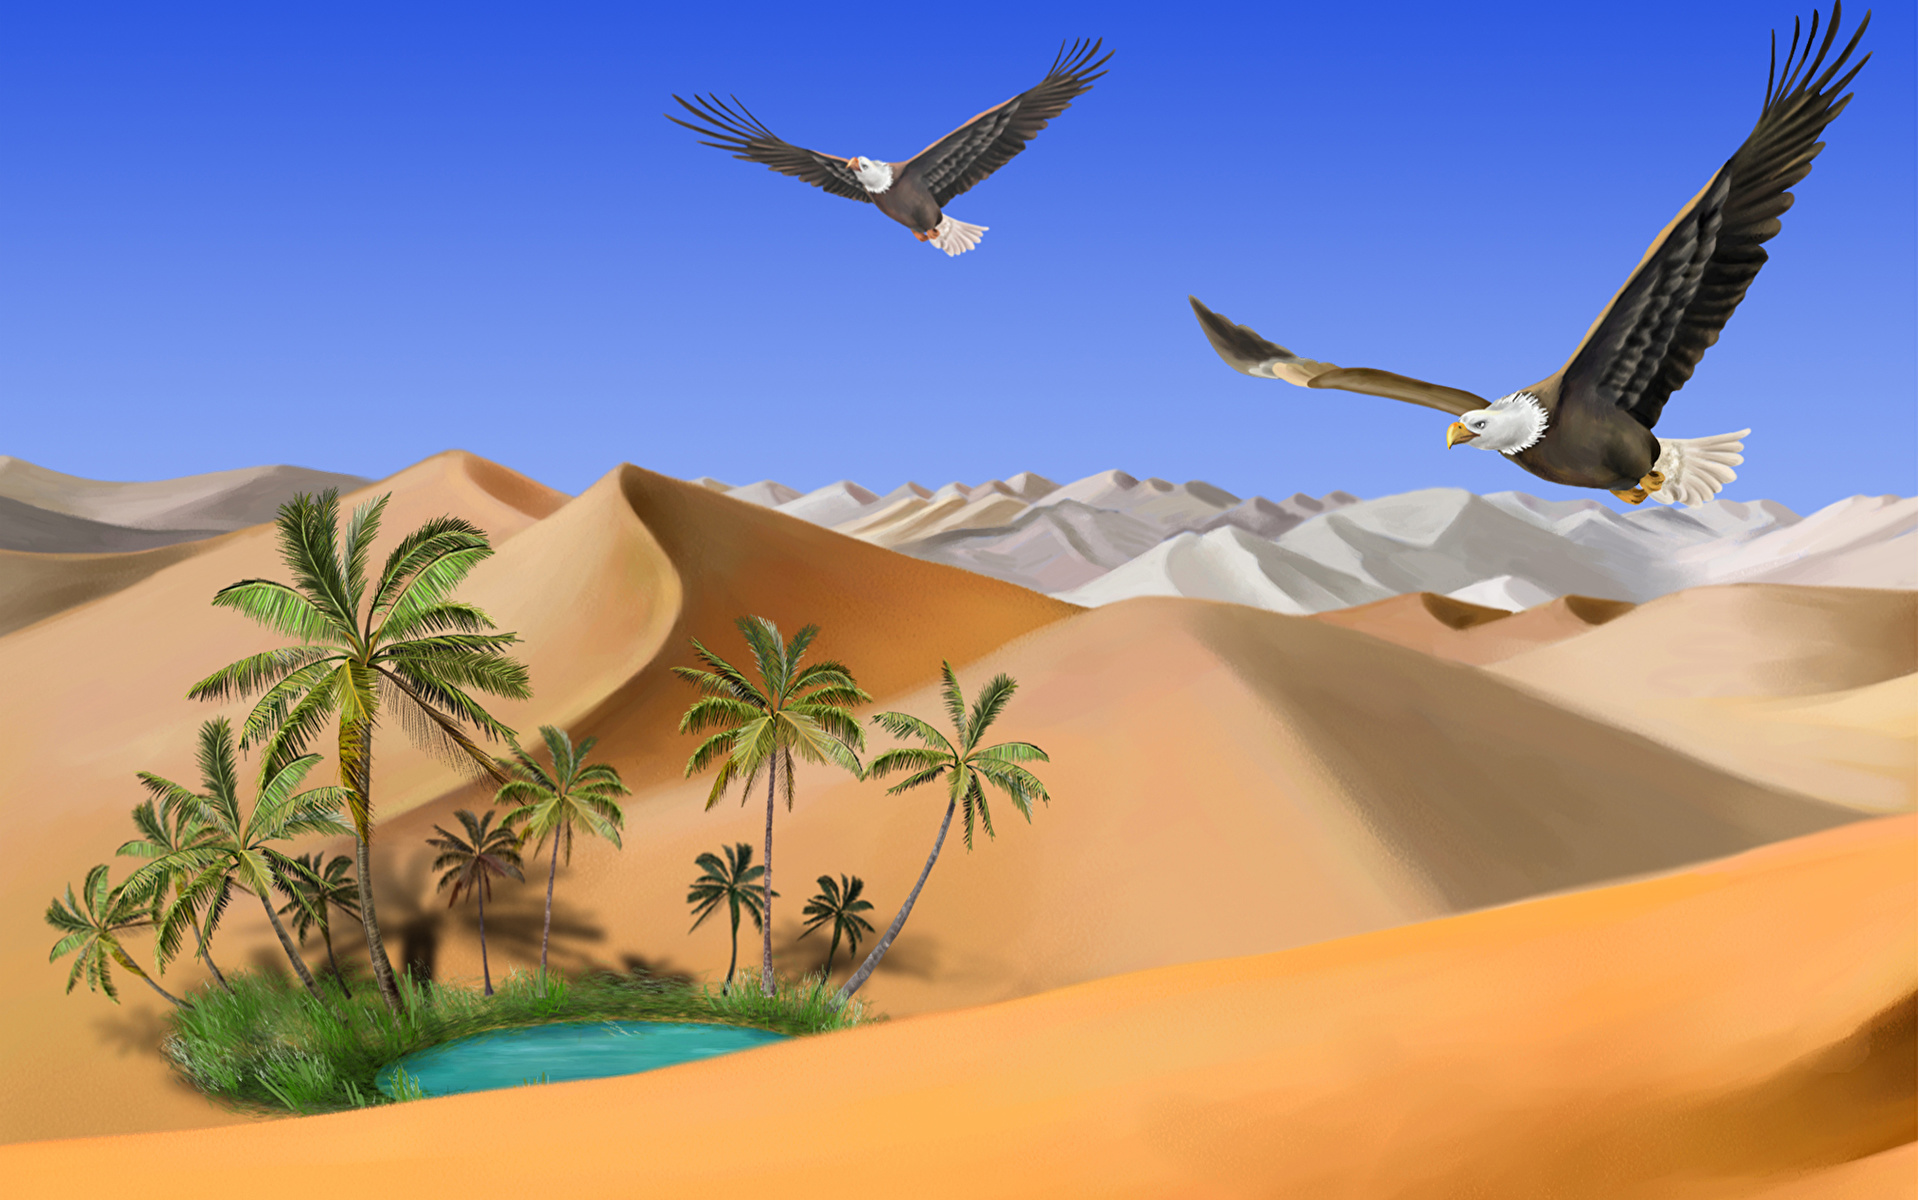 壁紙 19x10 鳥類 描かれた壁紙 砂漠 タカ ハクトウワシ 砂 動物 自然 ダウンロード 写真